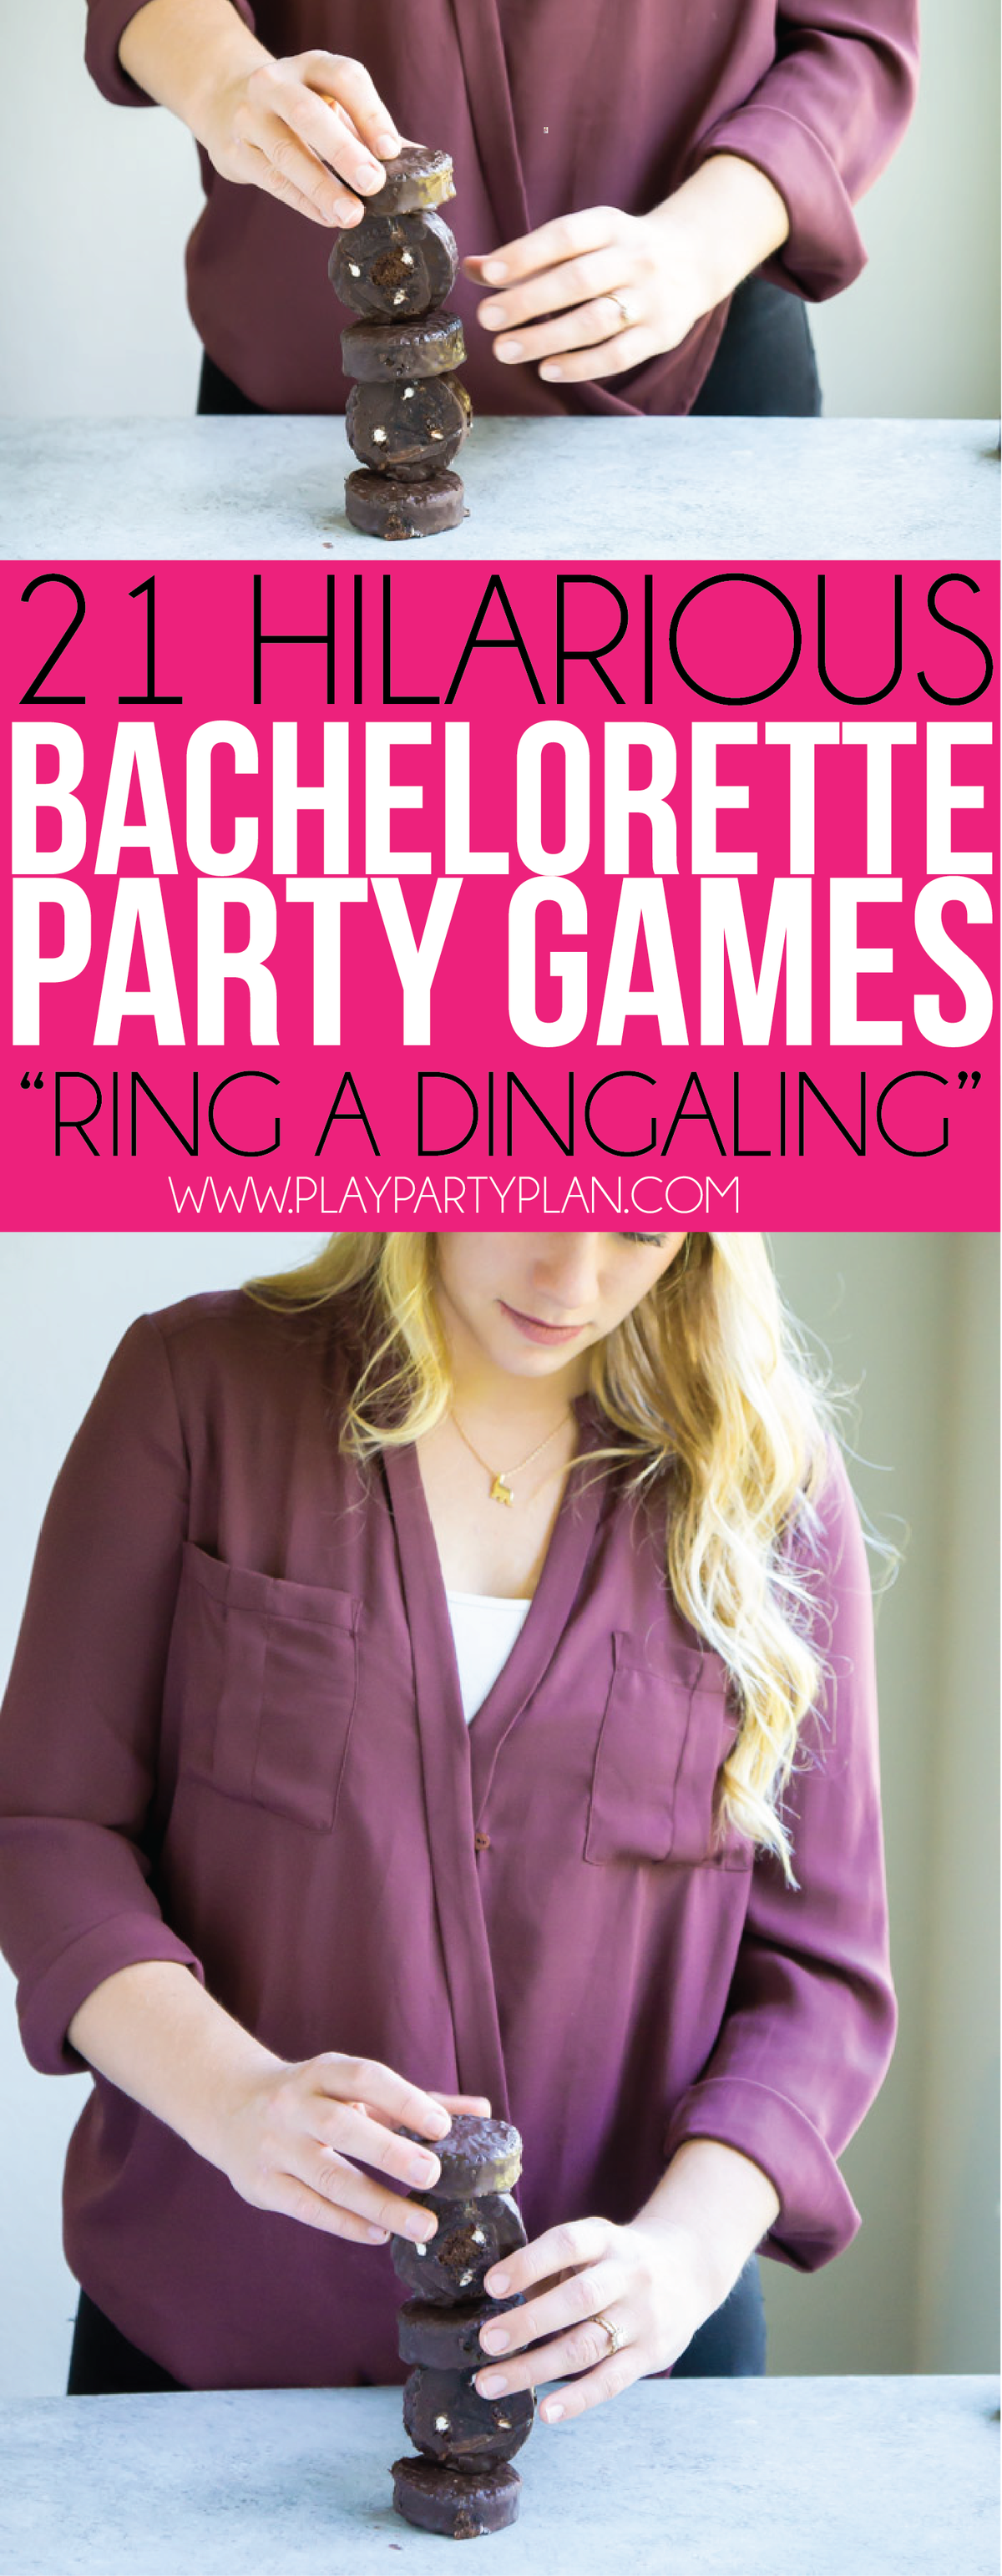 Ukusni ding dongi se začnejo v teh zabavnih igrah bachelorette party